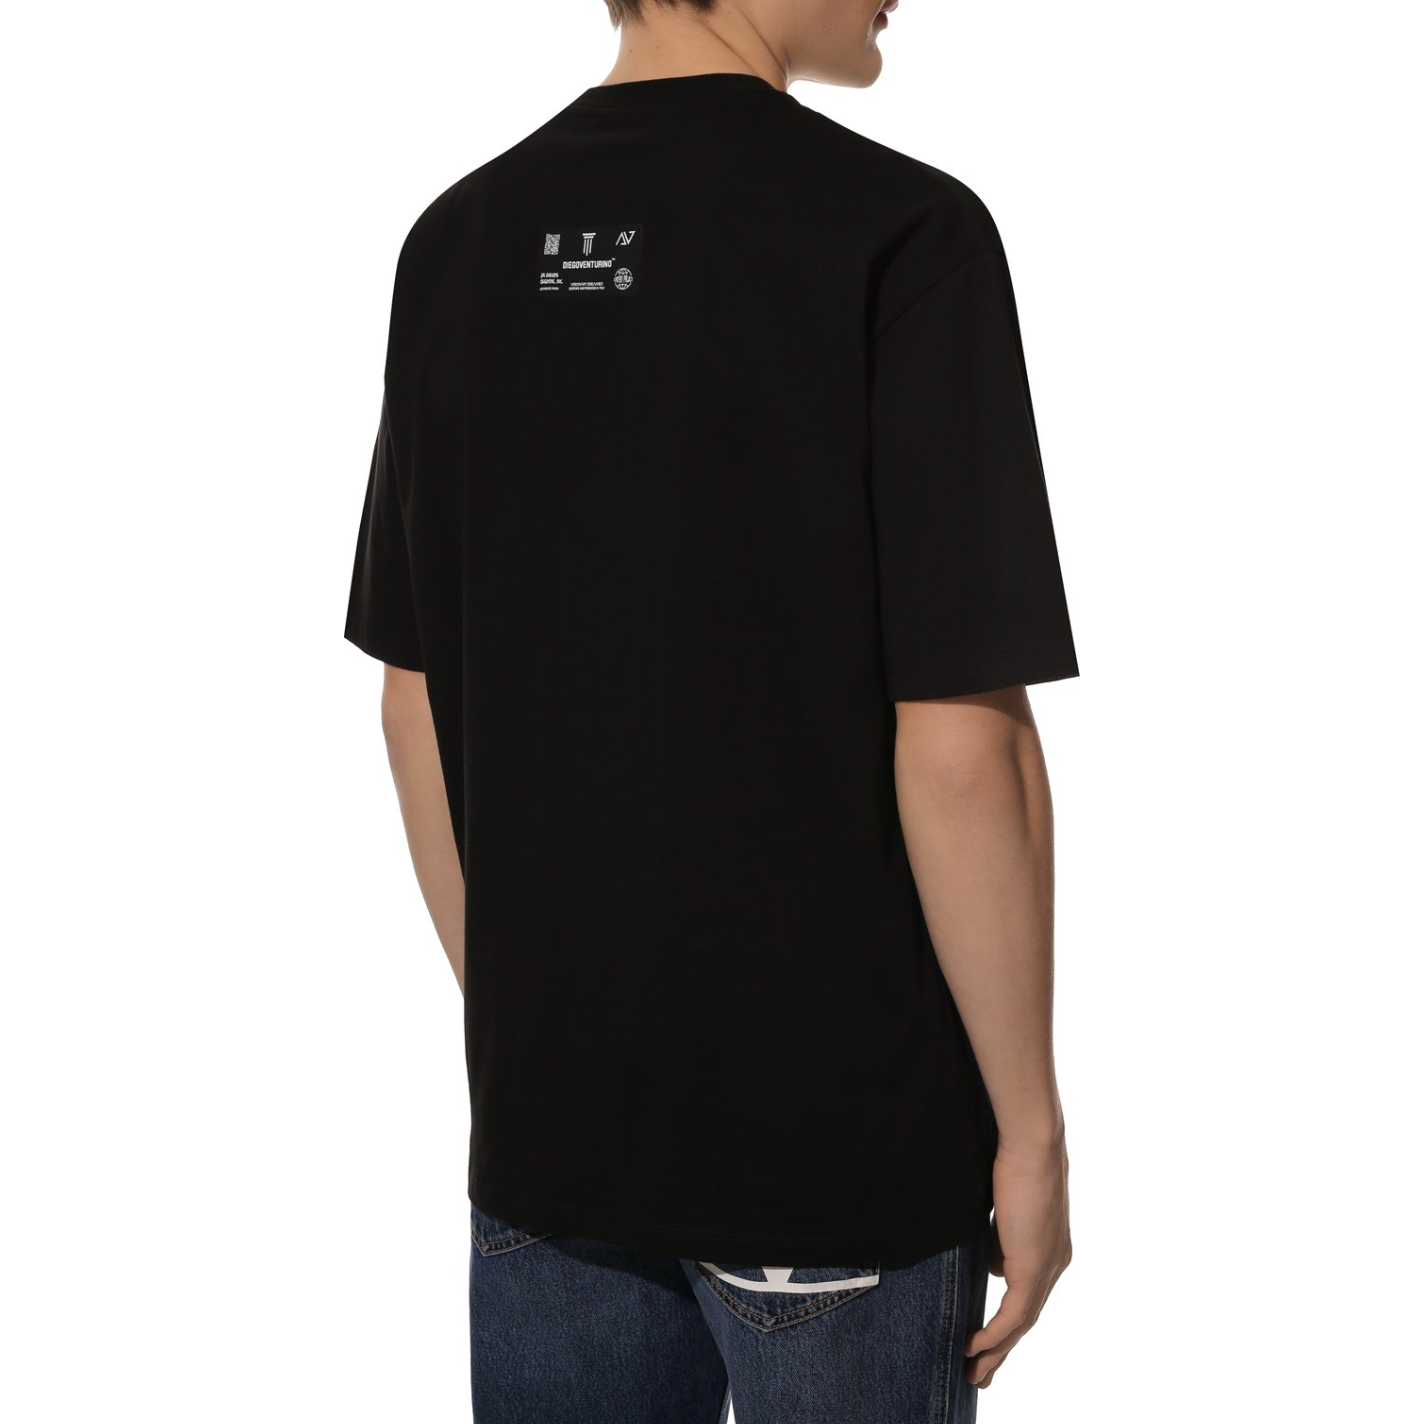 Diego Venturino | Black Cotton T-Shirt | McRichard Designer Brands